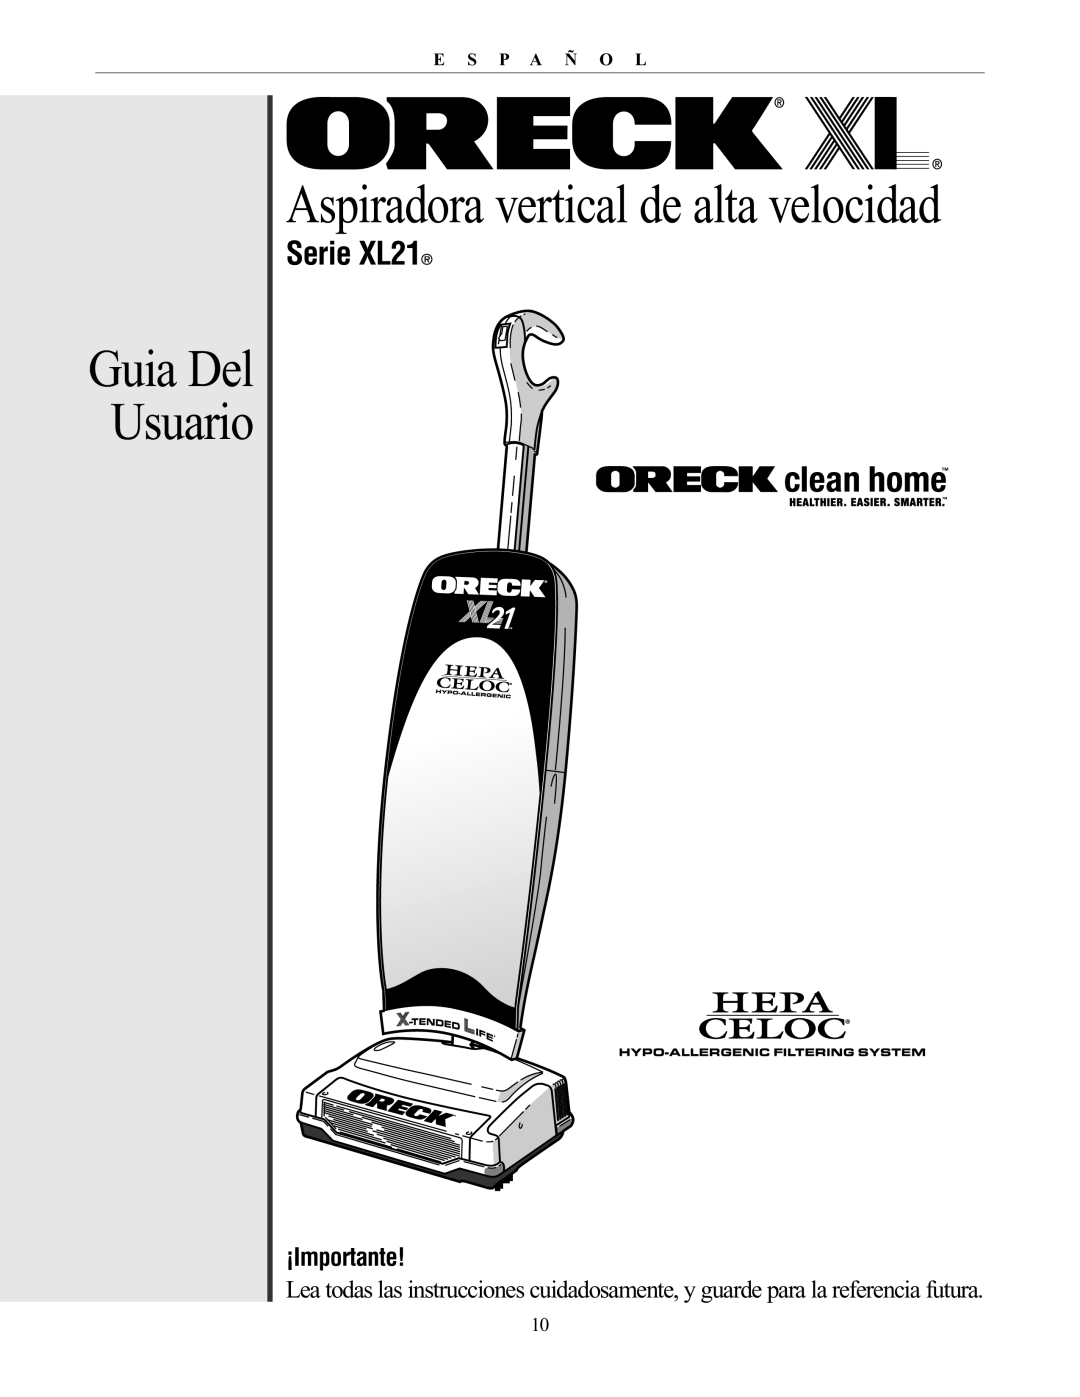 Oreck manual Guia Del Usuario, Serie XL21, Aspiradora vertical de alta velocidad, ¡Importante, E S P A Ñ O L 